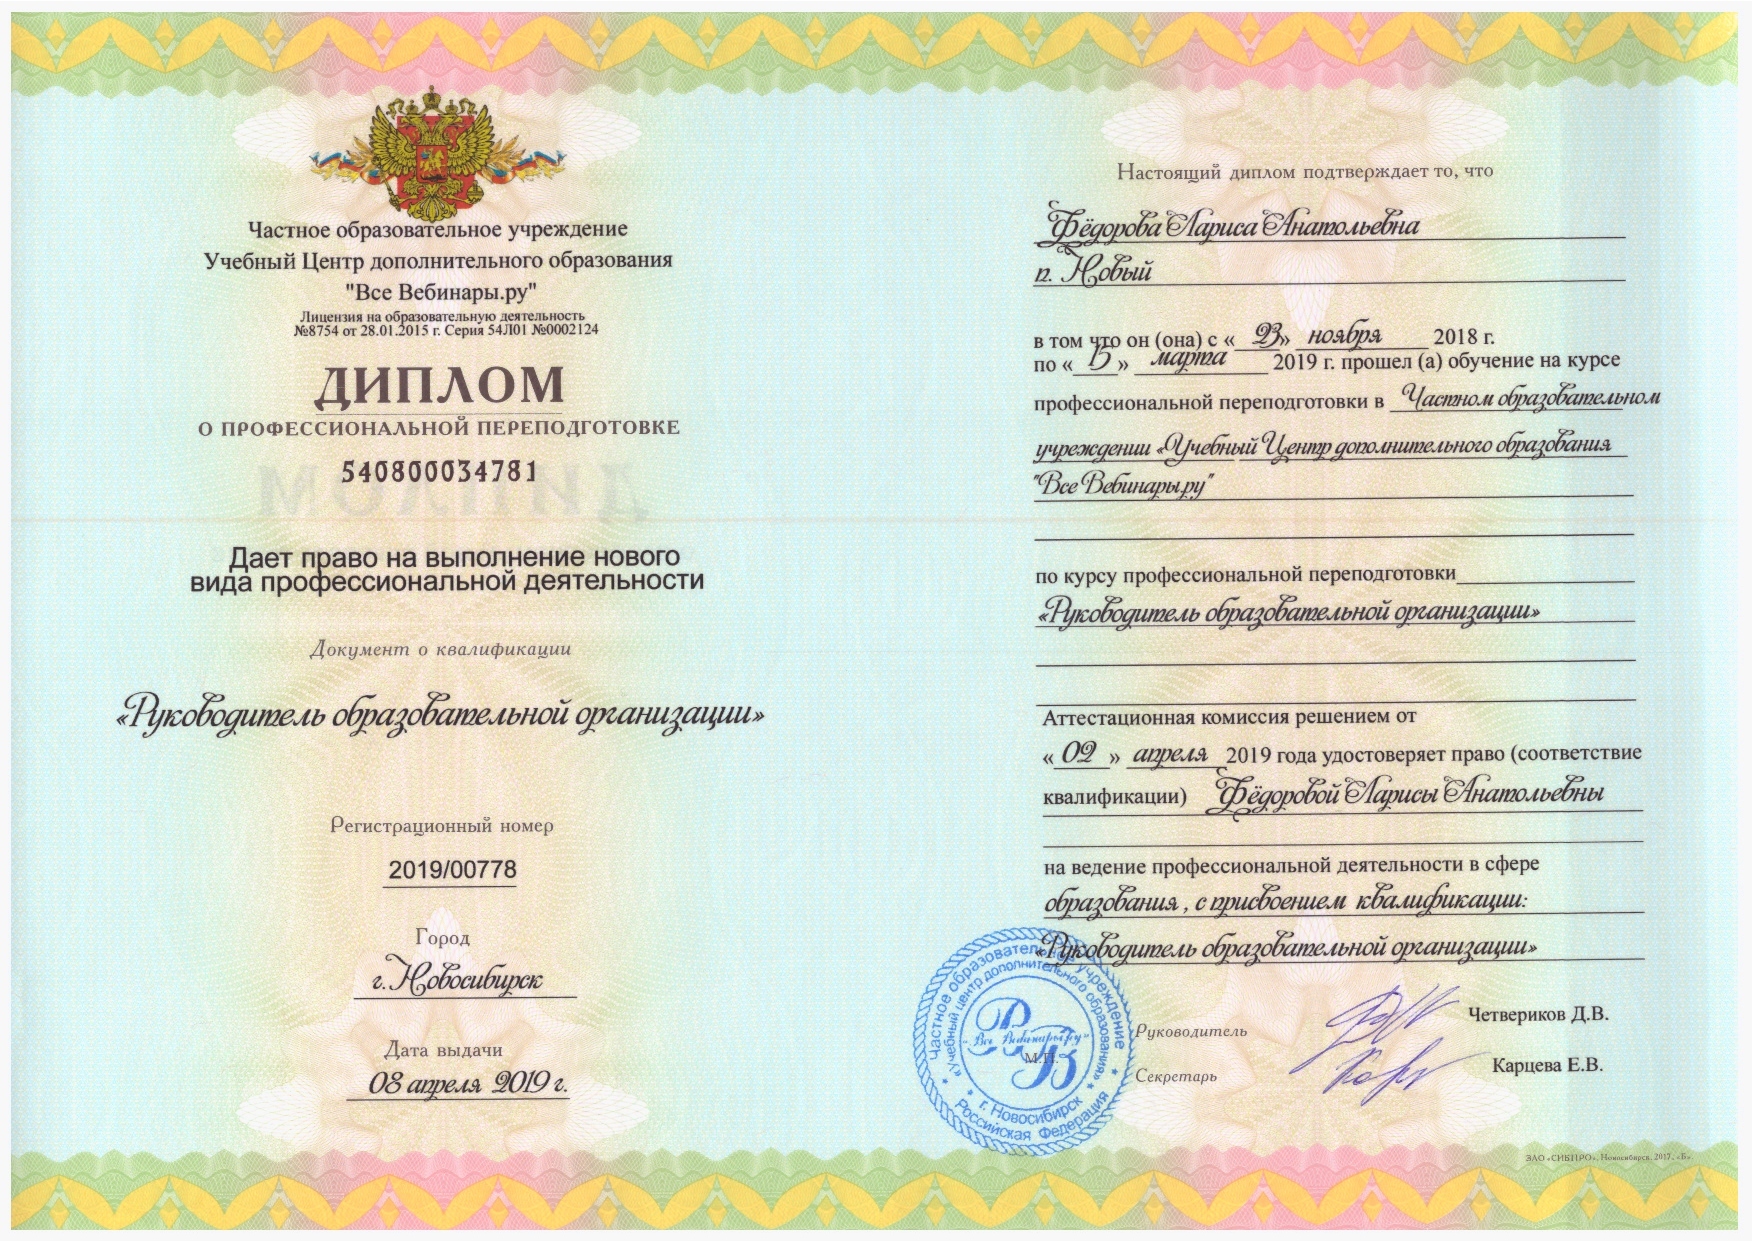 РЭУ Плеханова диплом о переподготовке